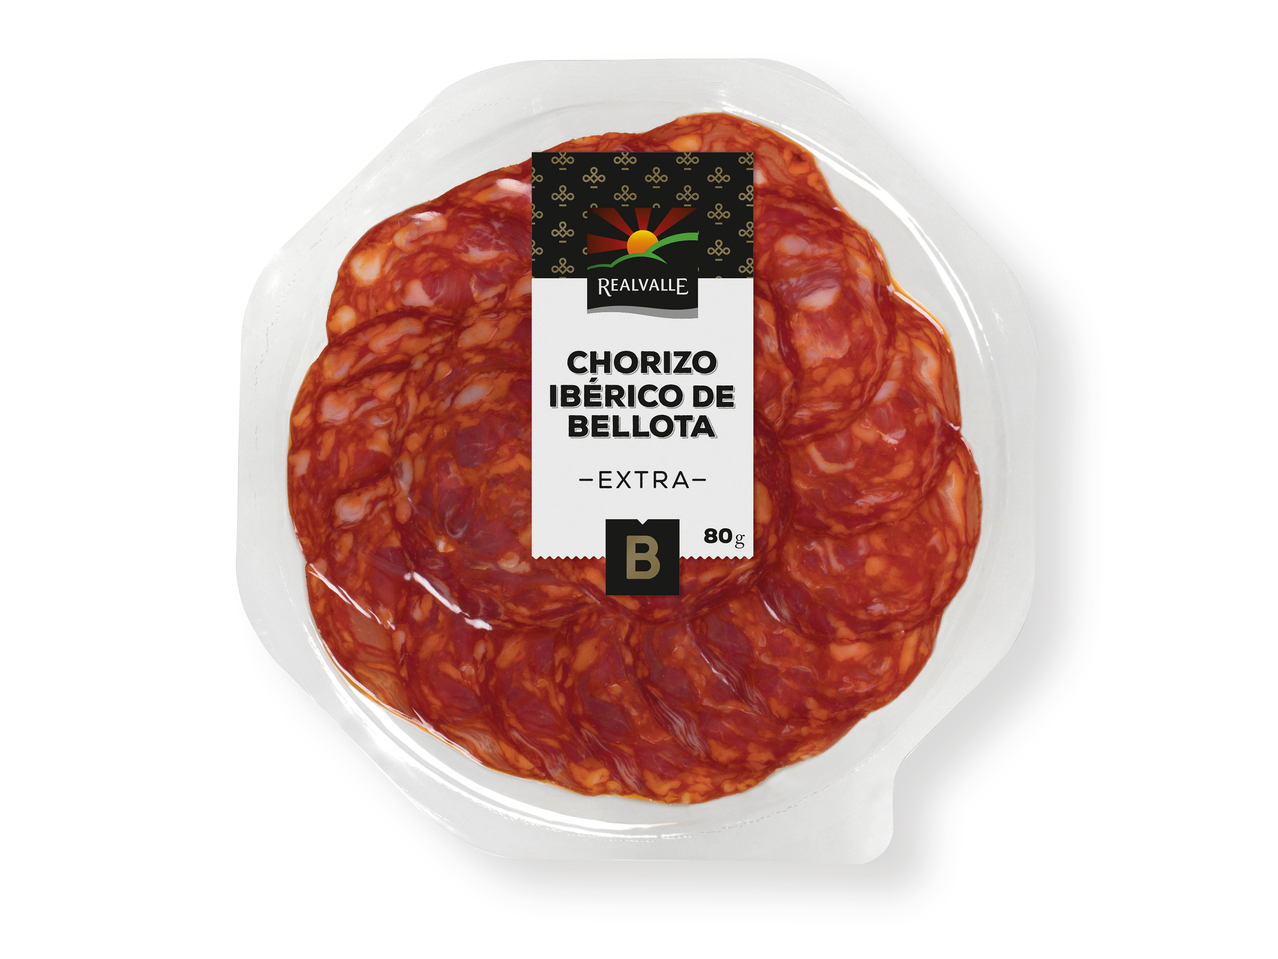 "Realvalle" Chorizo ibérico